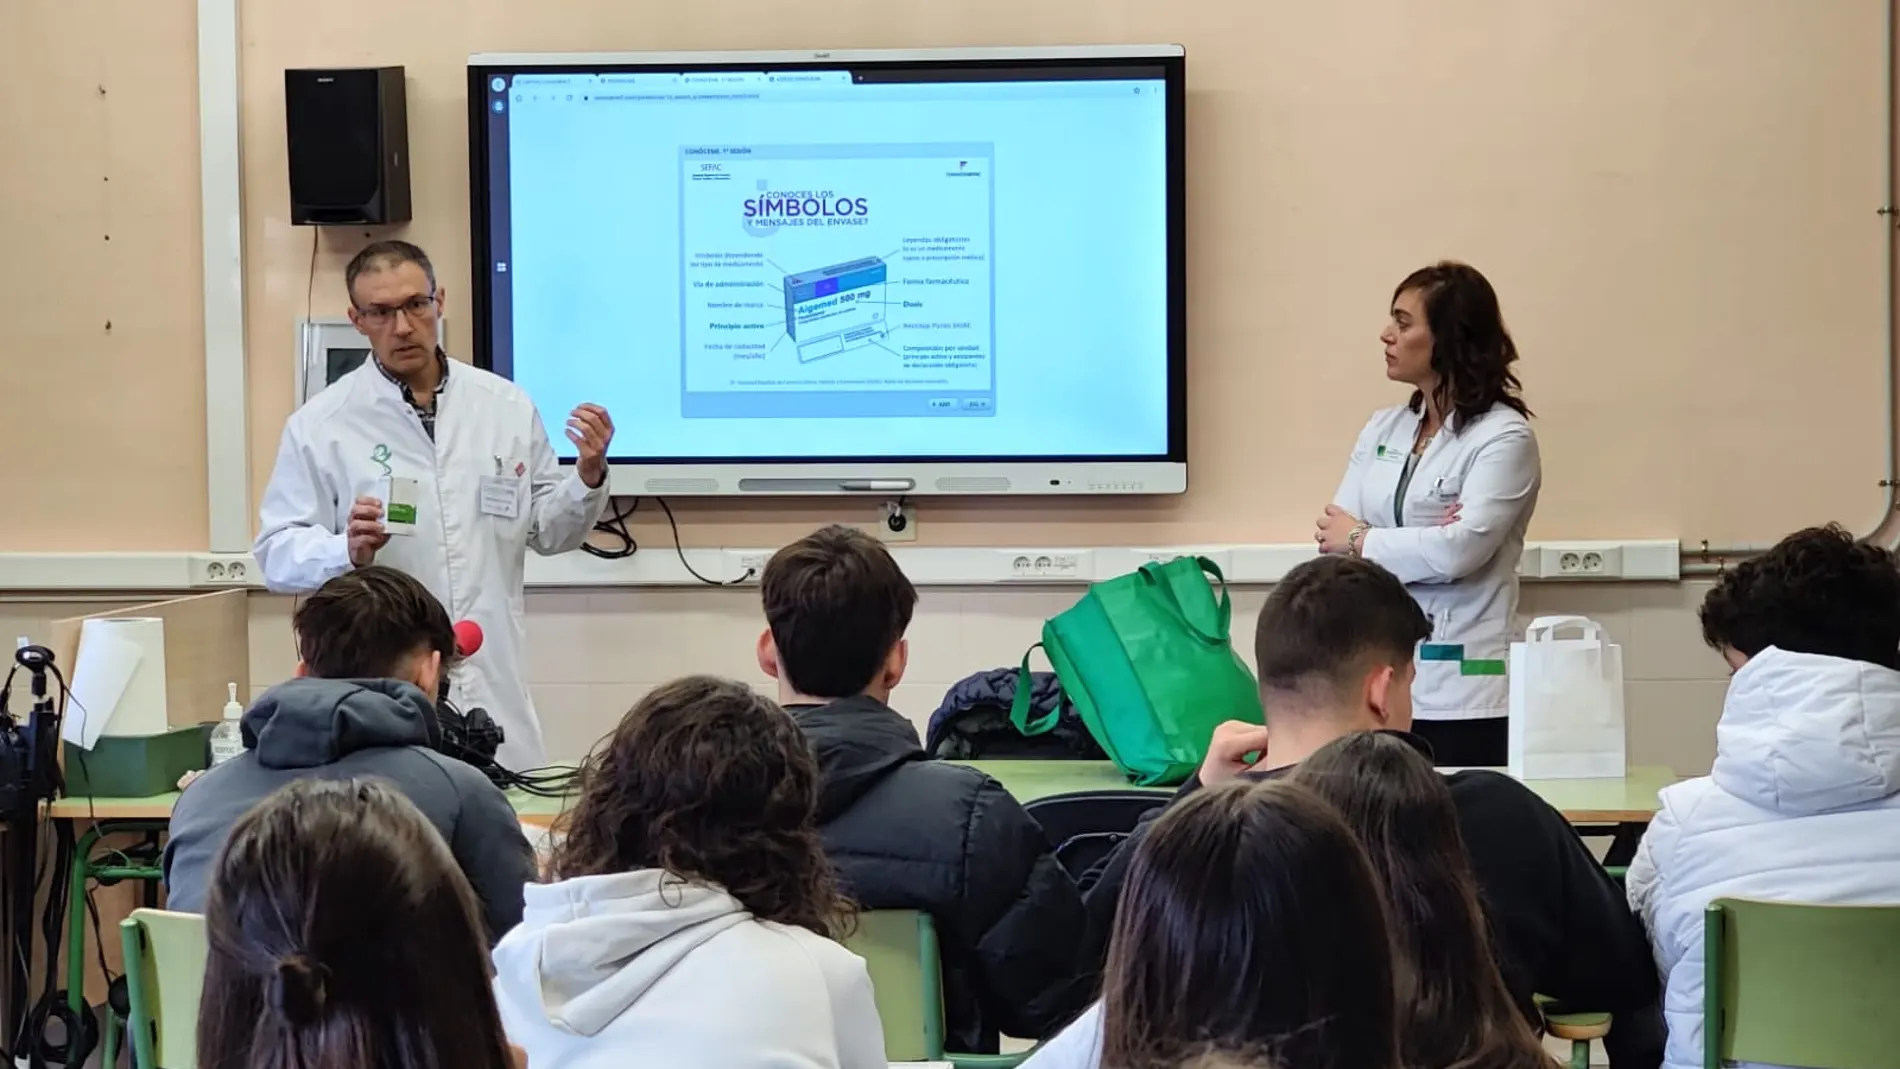 Educación farmacéutica en las aulas de Valladolid